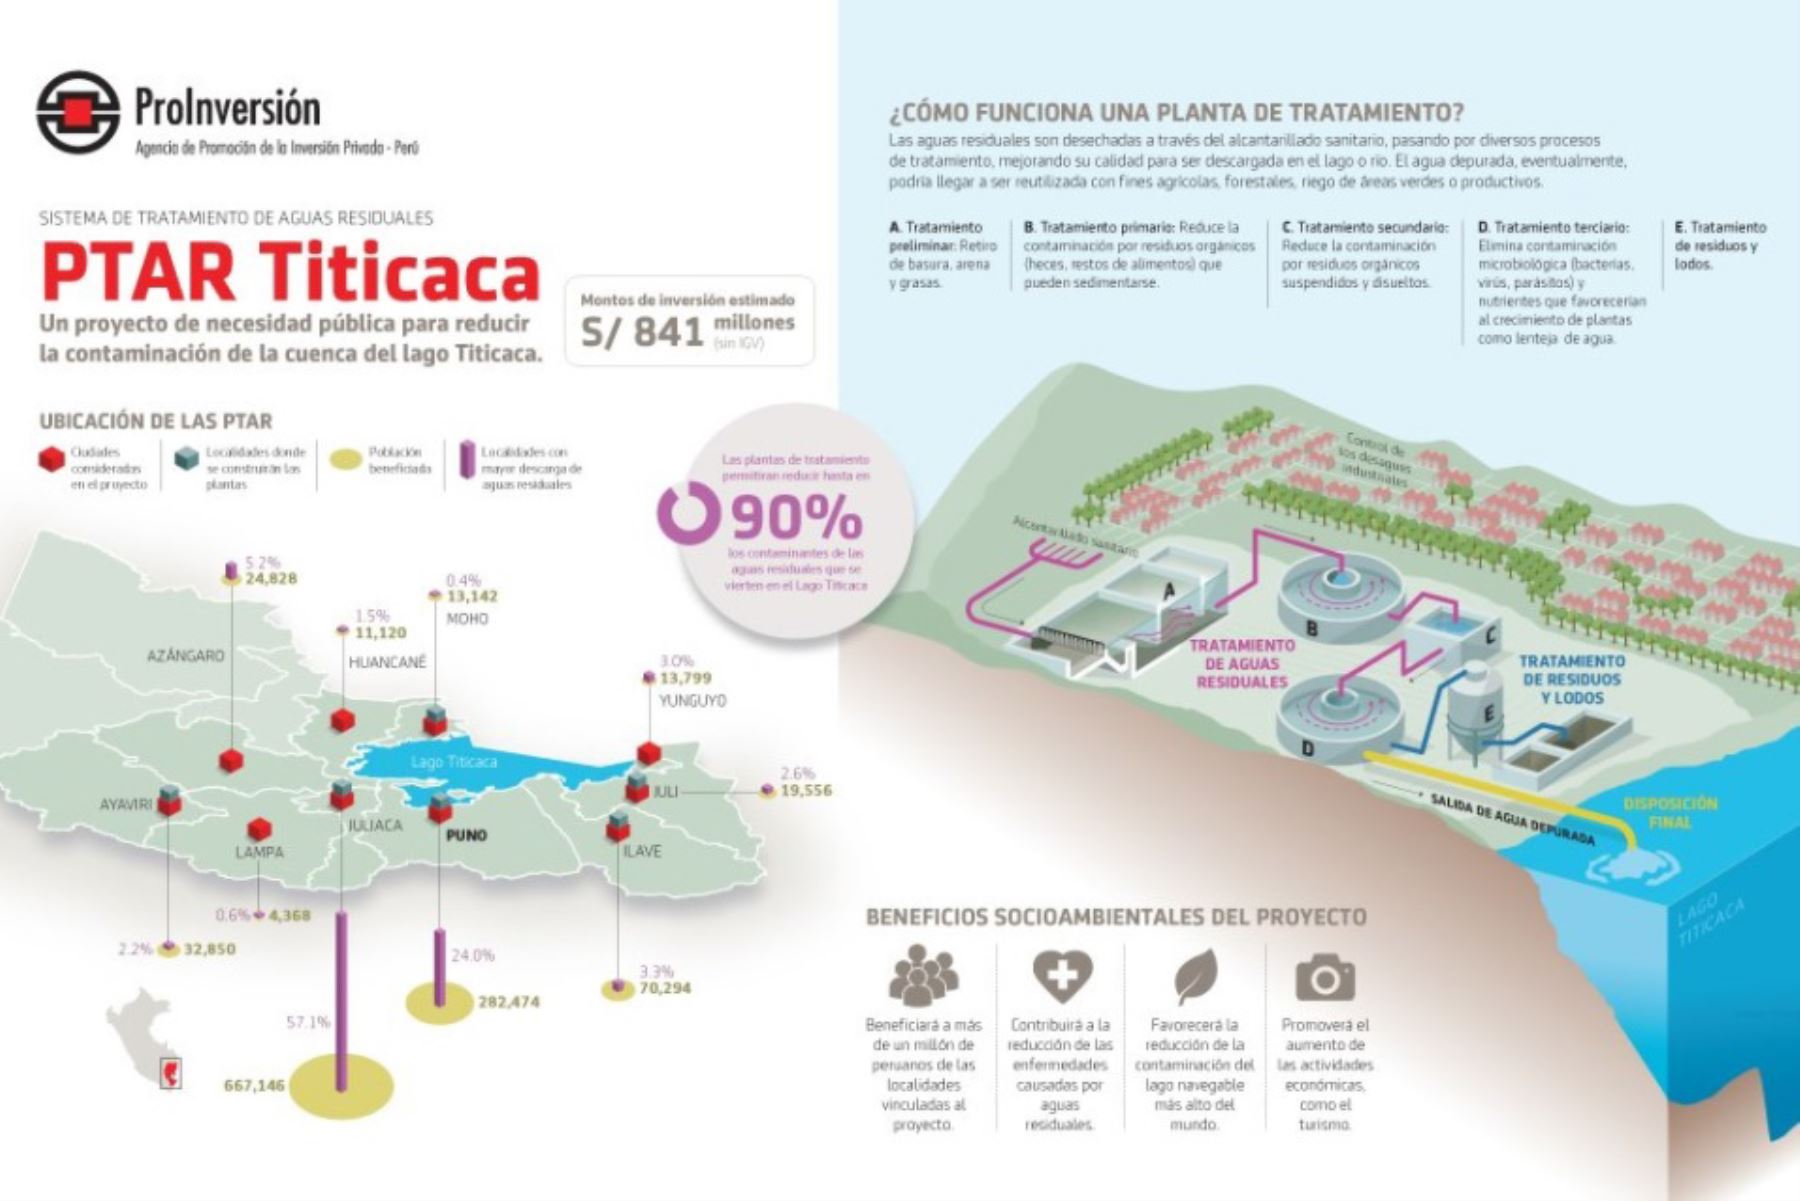 El proyecto Sistema de Tratamiento de Aguas Residuales de la Cuenca del Lago Titicaca-PTAR Titicaca beneficiará a más de 1.2 millones de pobladores.